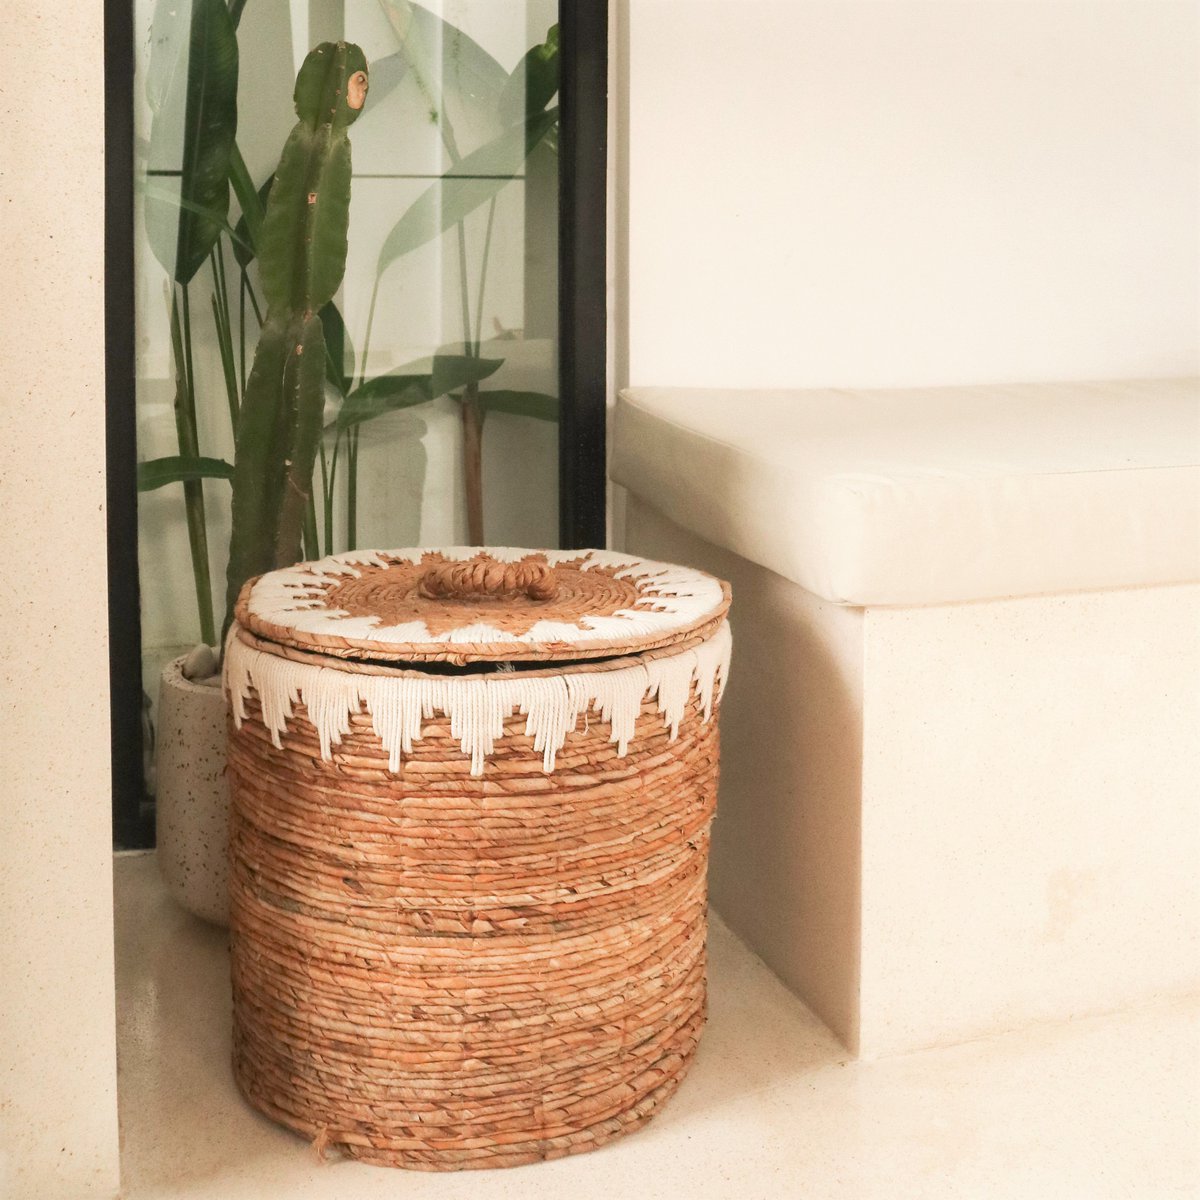 Laundry basket with lid made of banana fiber EMPAT - Large laundry basket with white cotton macrame (2 sizes)